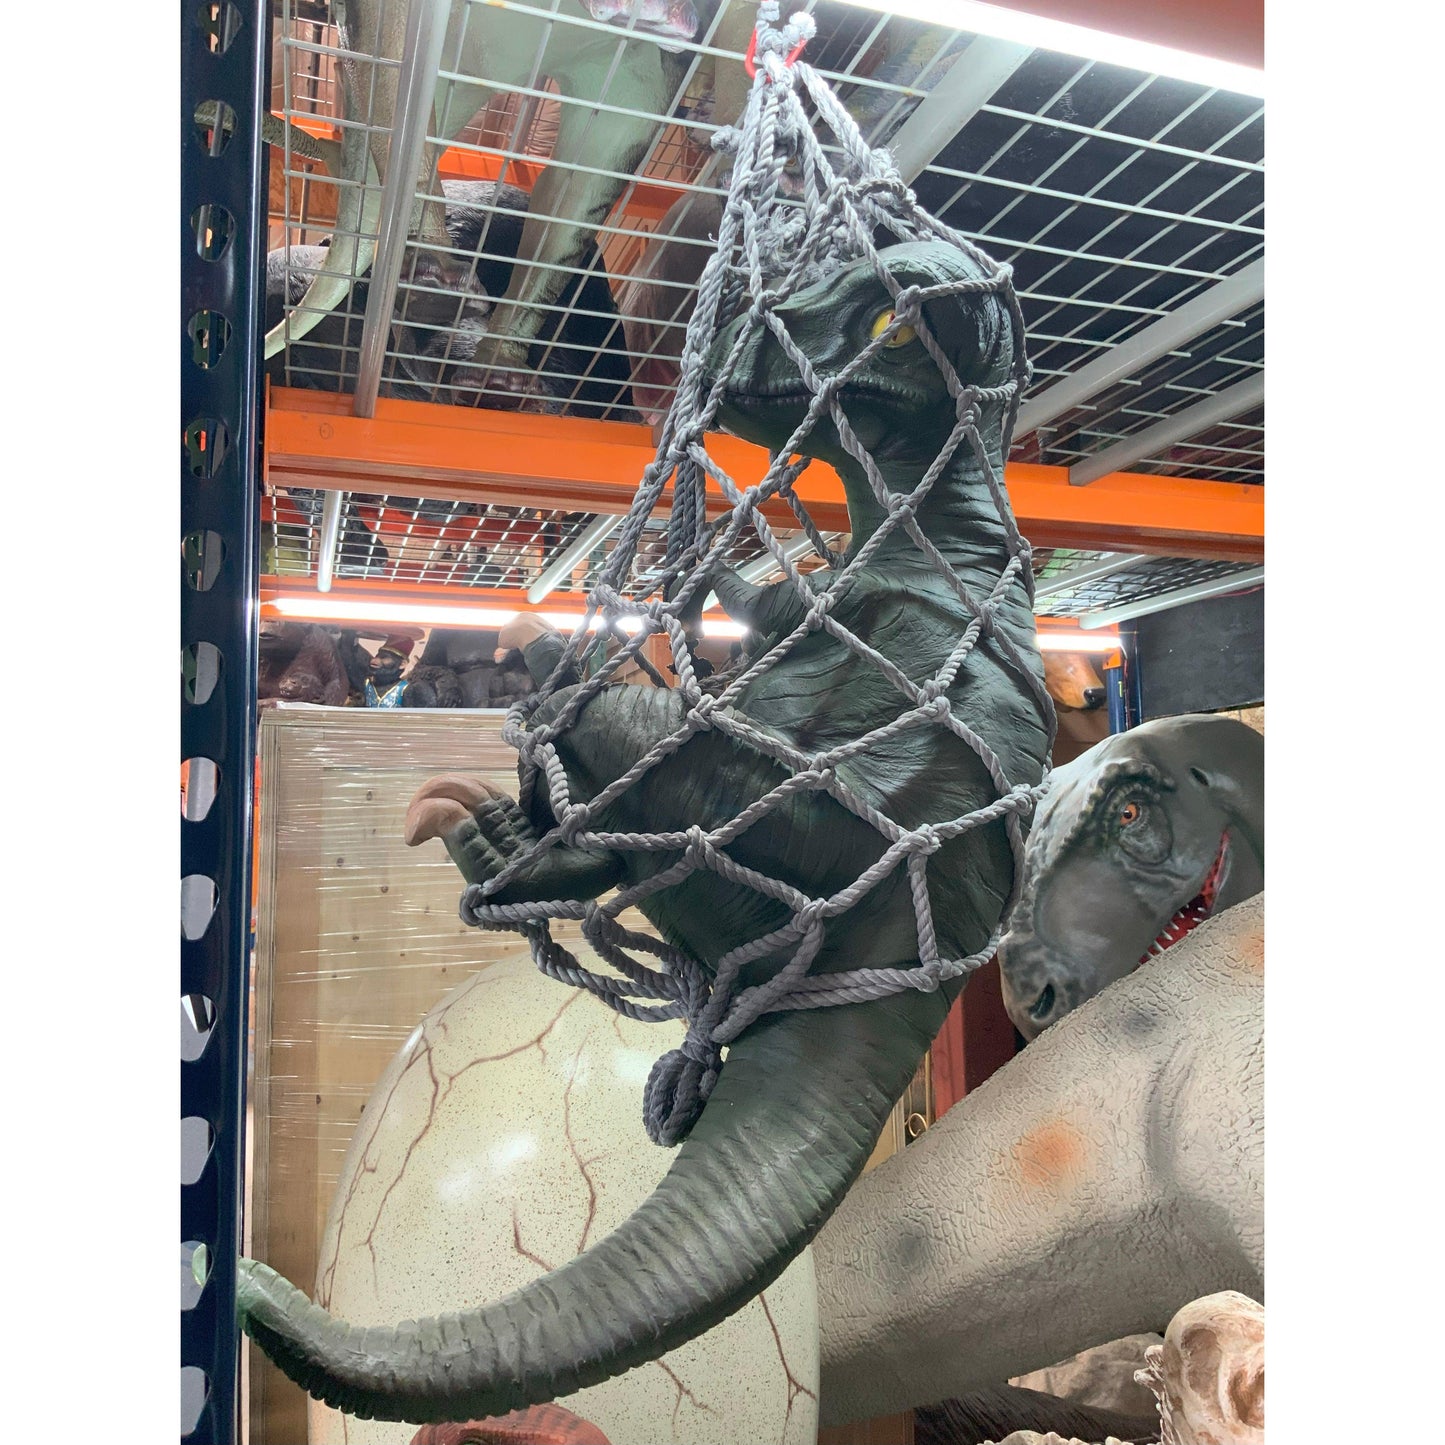 Hanging Baby T-Rex Dinosaur Statue - LM Treasures Prop Rentals 